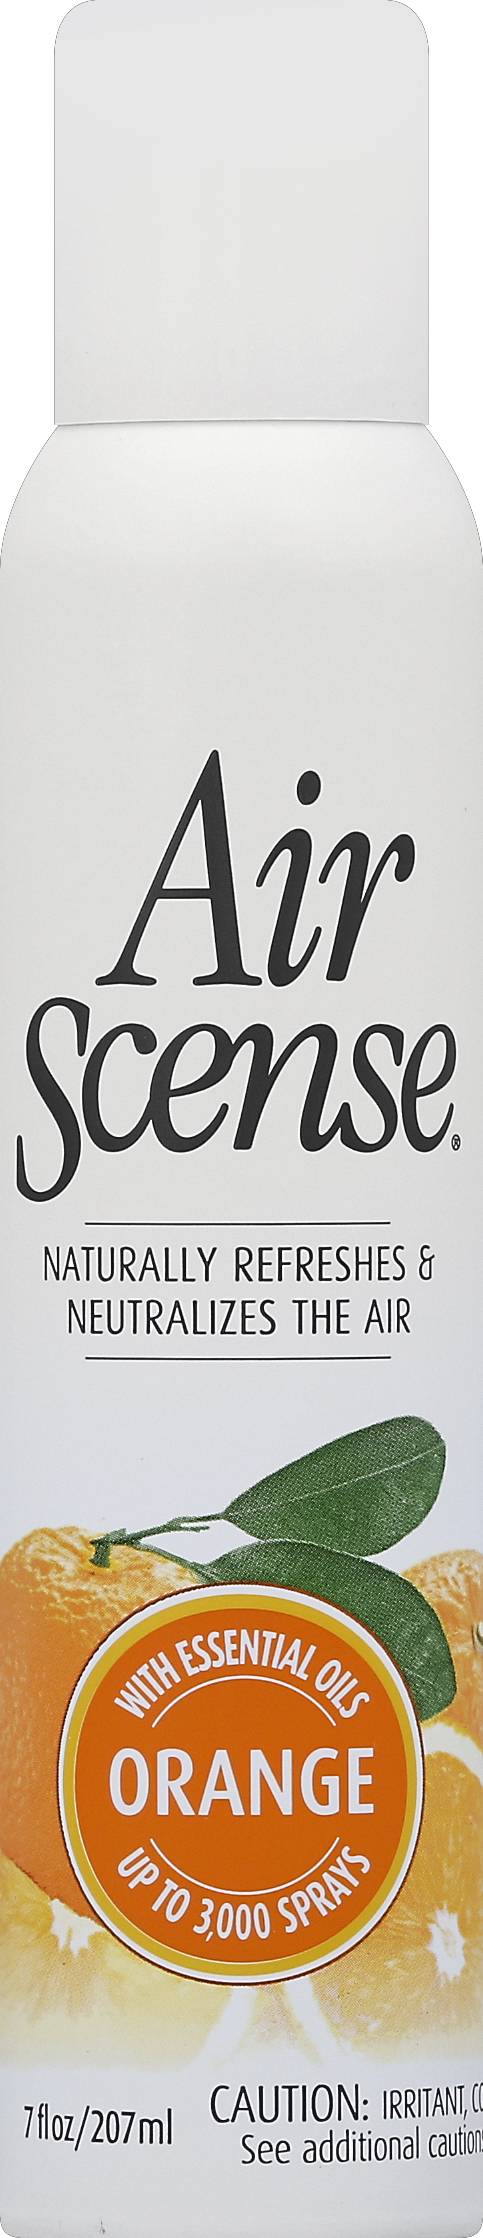 Air Scense Orange Scent Air Freshener (7 oz)